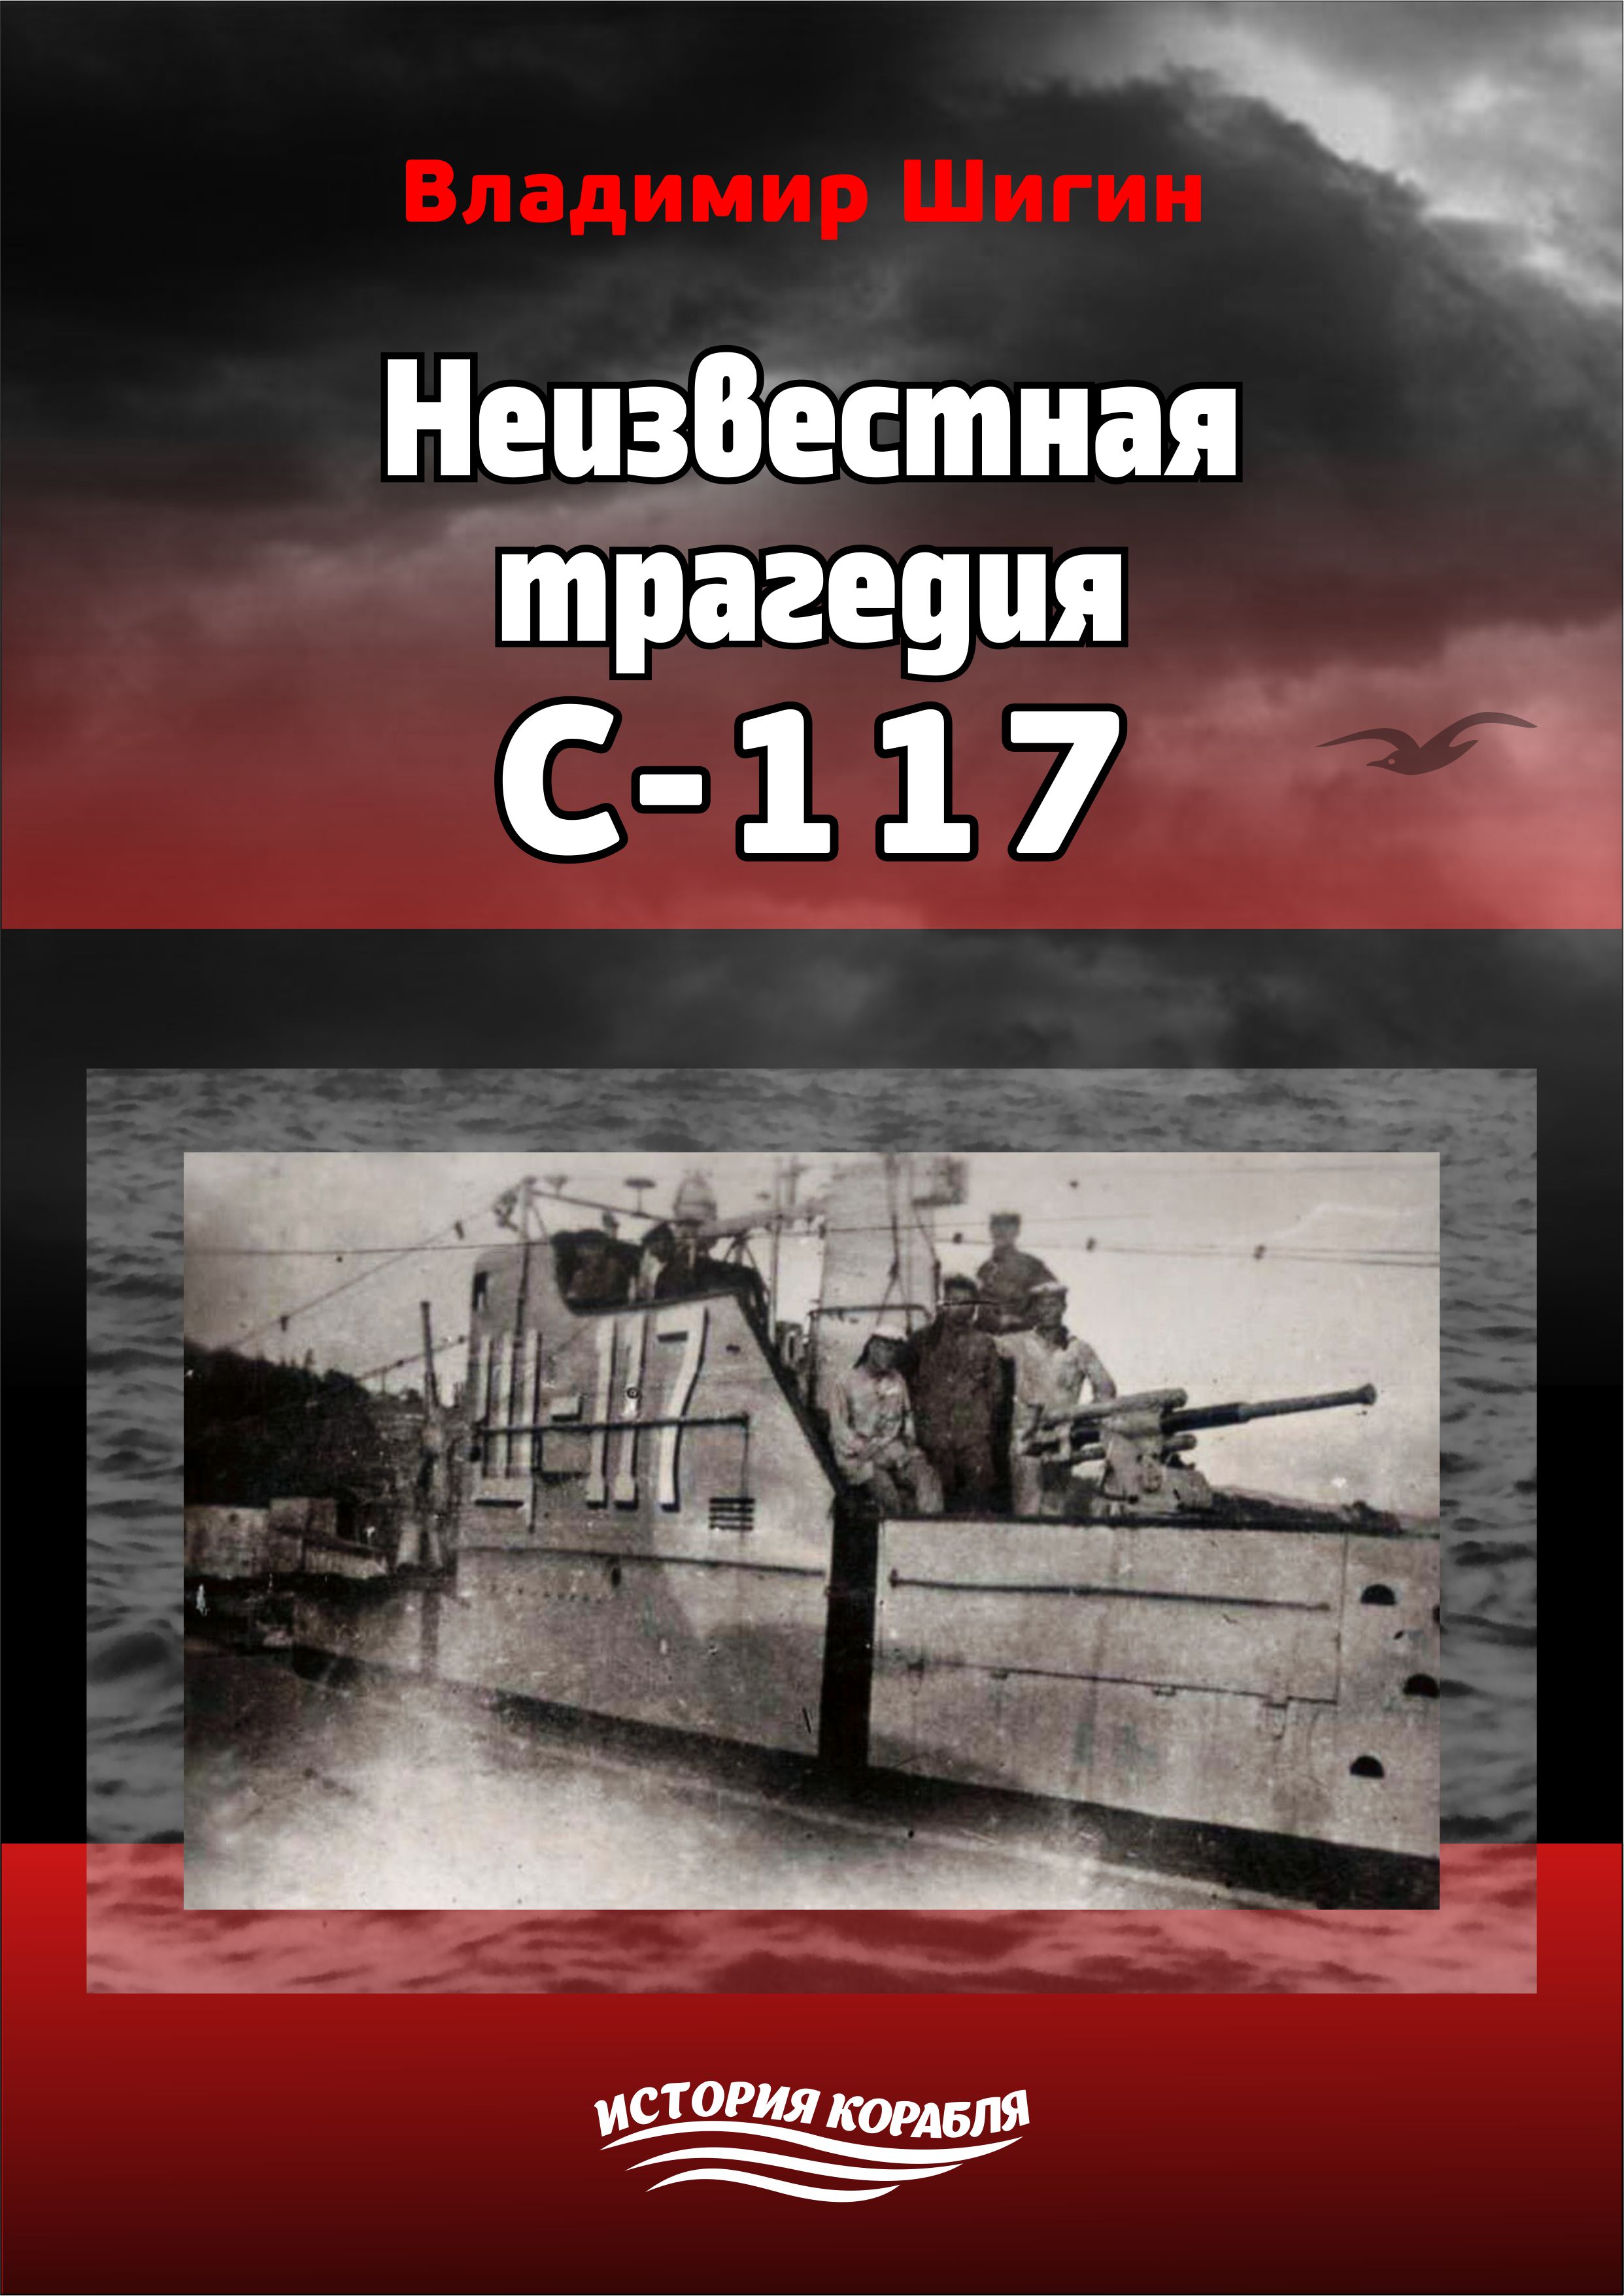 Книга Неизвестная трагедия С-117 из серии , созданная Владимир Шигин, может относится к жанру Биографии и Мемуары, Военное дело, спецслужбы. Стоимость электронной книги Неизвестная трагедия С-117 с идентификатором 22601332 составляет 99.90 руб.